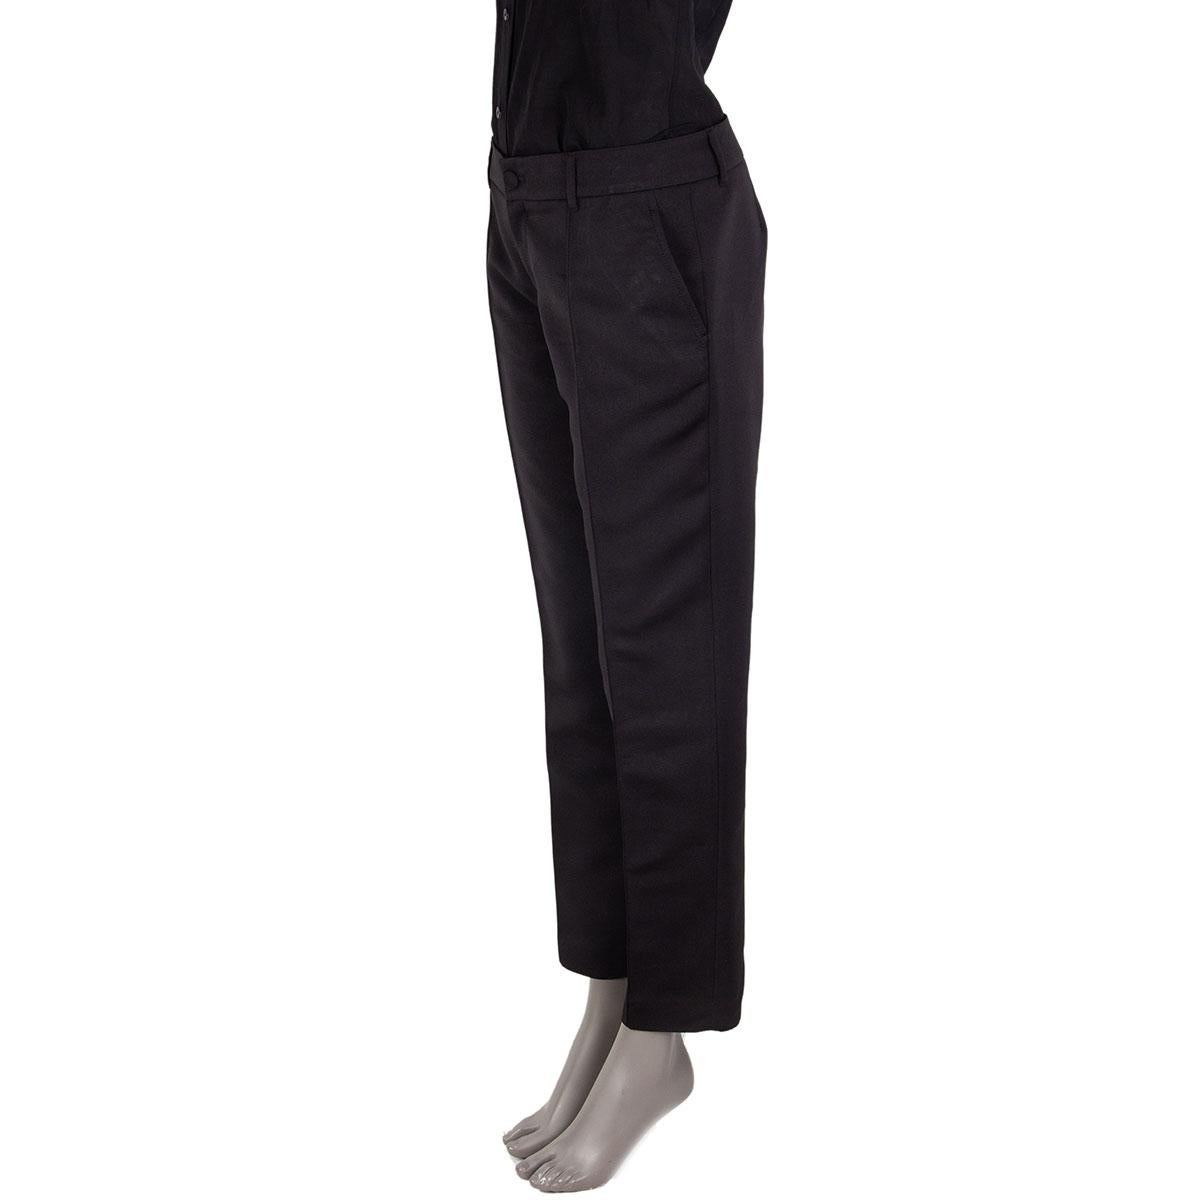 100% authentique Pantalon classique Gucci en soie noire (64%) et polyamide (36%) avec poches fendues. Se ferme sur le devant par une fermeture à glissière et un bouton. Non doublé. Ils ont été portés et sont en excellent état. 

Mesures
Taille de